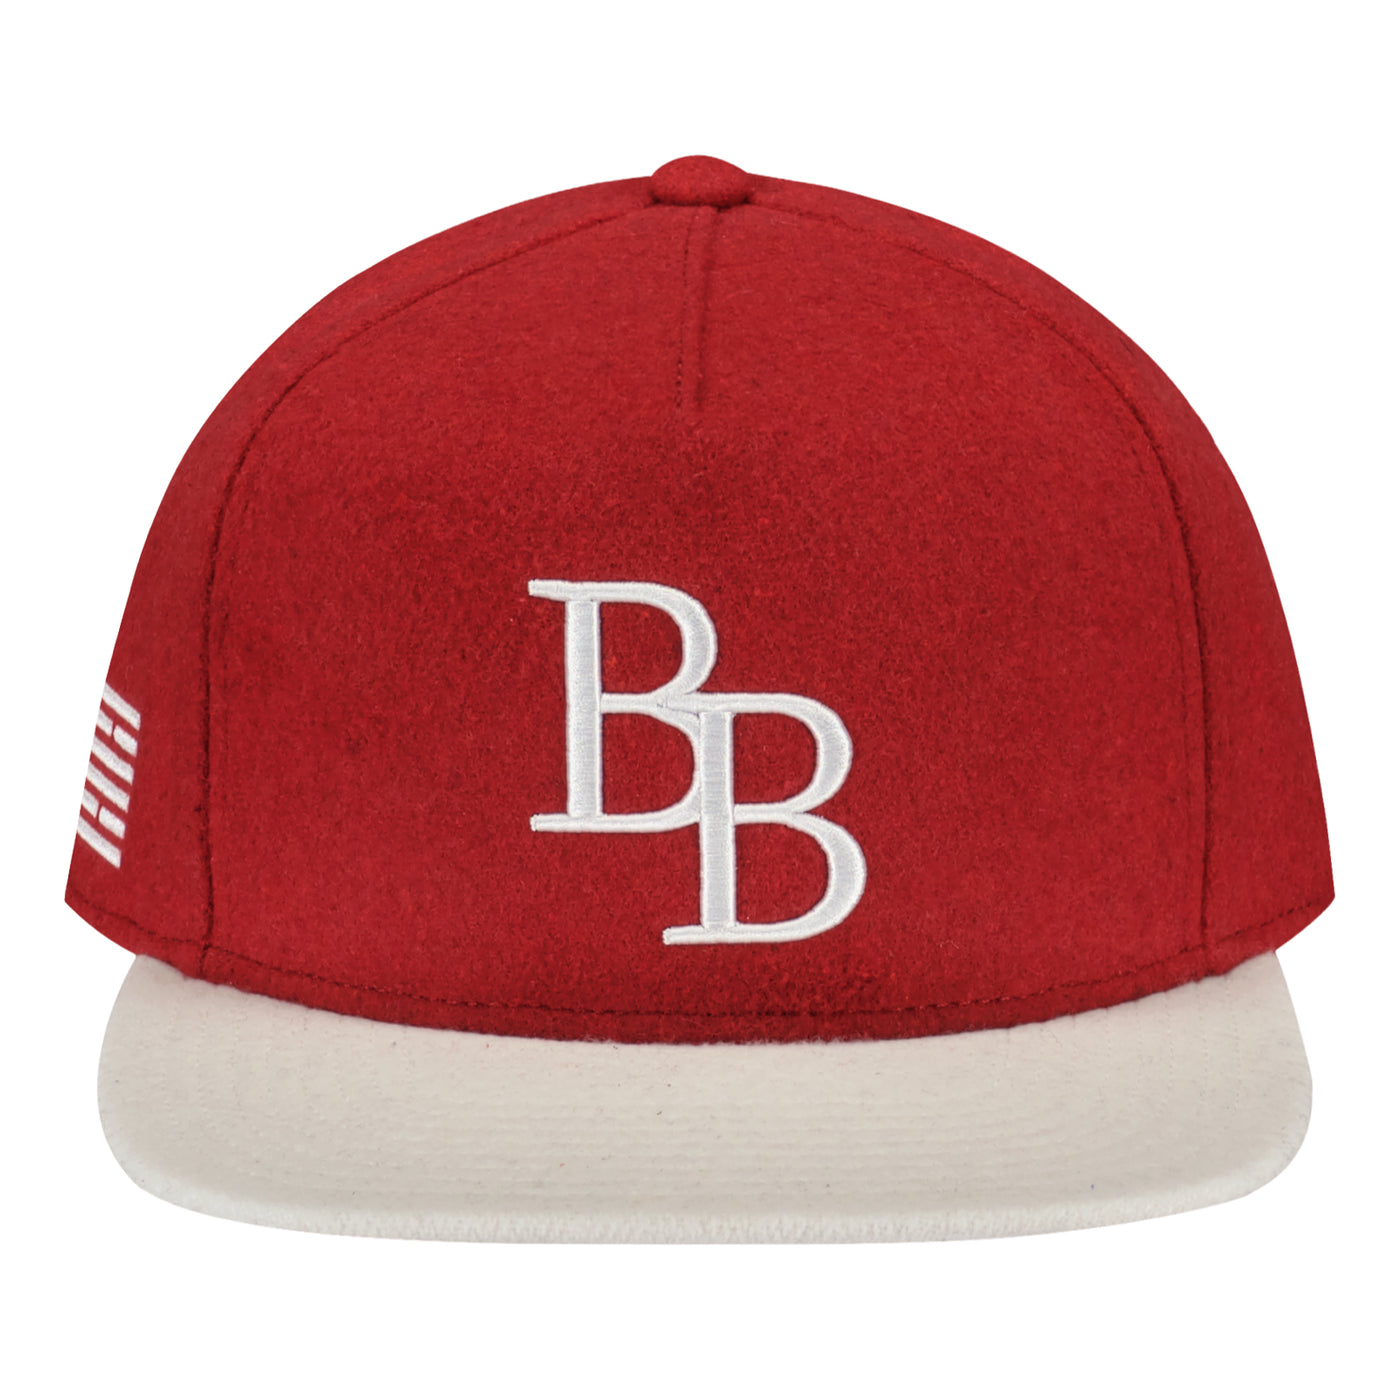 BB BASIC CAP Adrealine Rush Billebeino